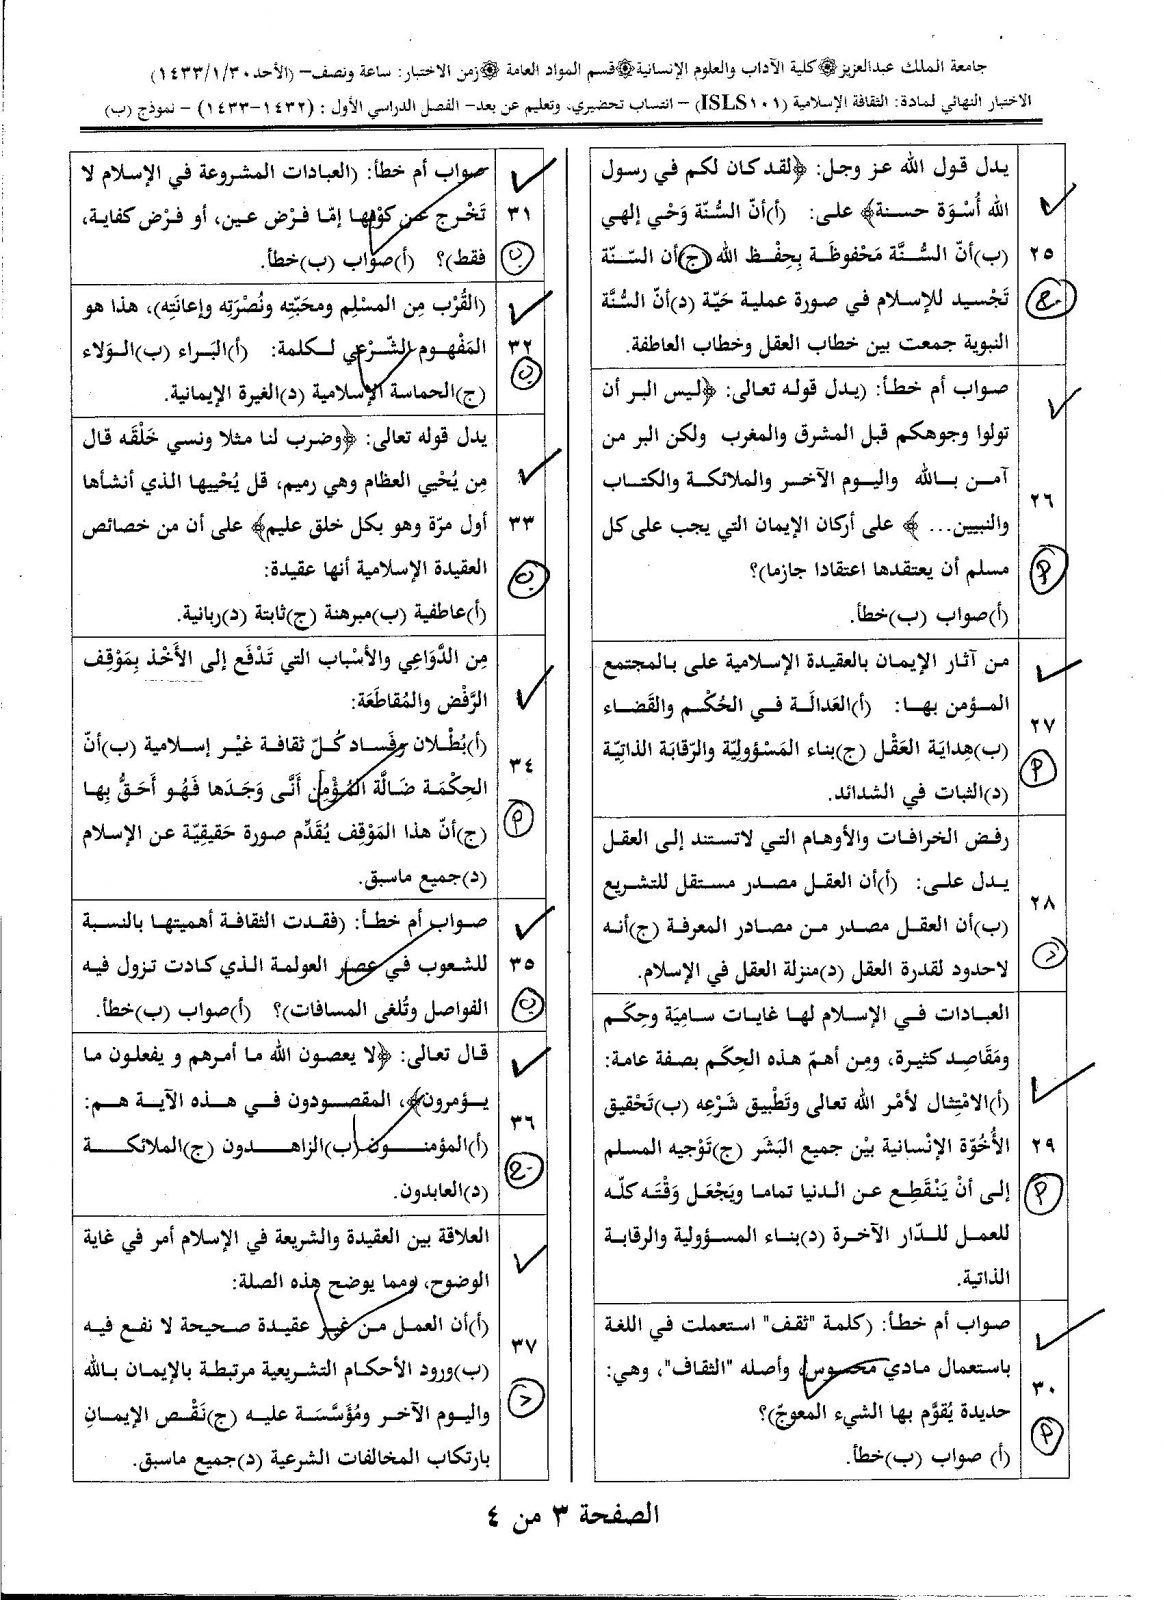 اسئلة مادة الثقافة الإسلامية isls 101 انتساب وتعليم عن بعد الفصل الدراسي الأول 1433هـ نموذج (ب)